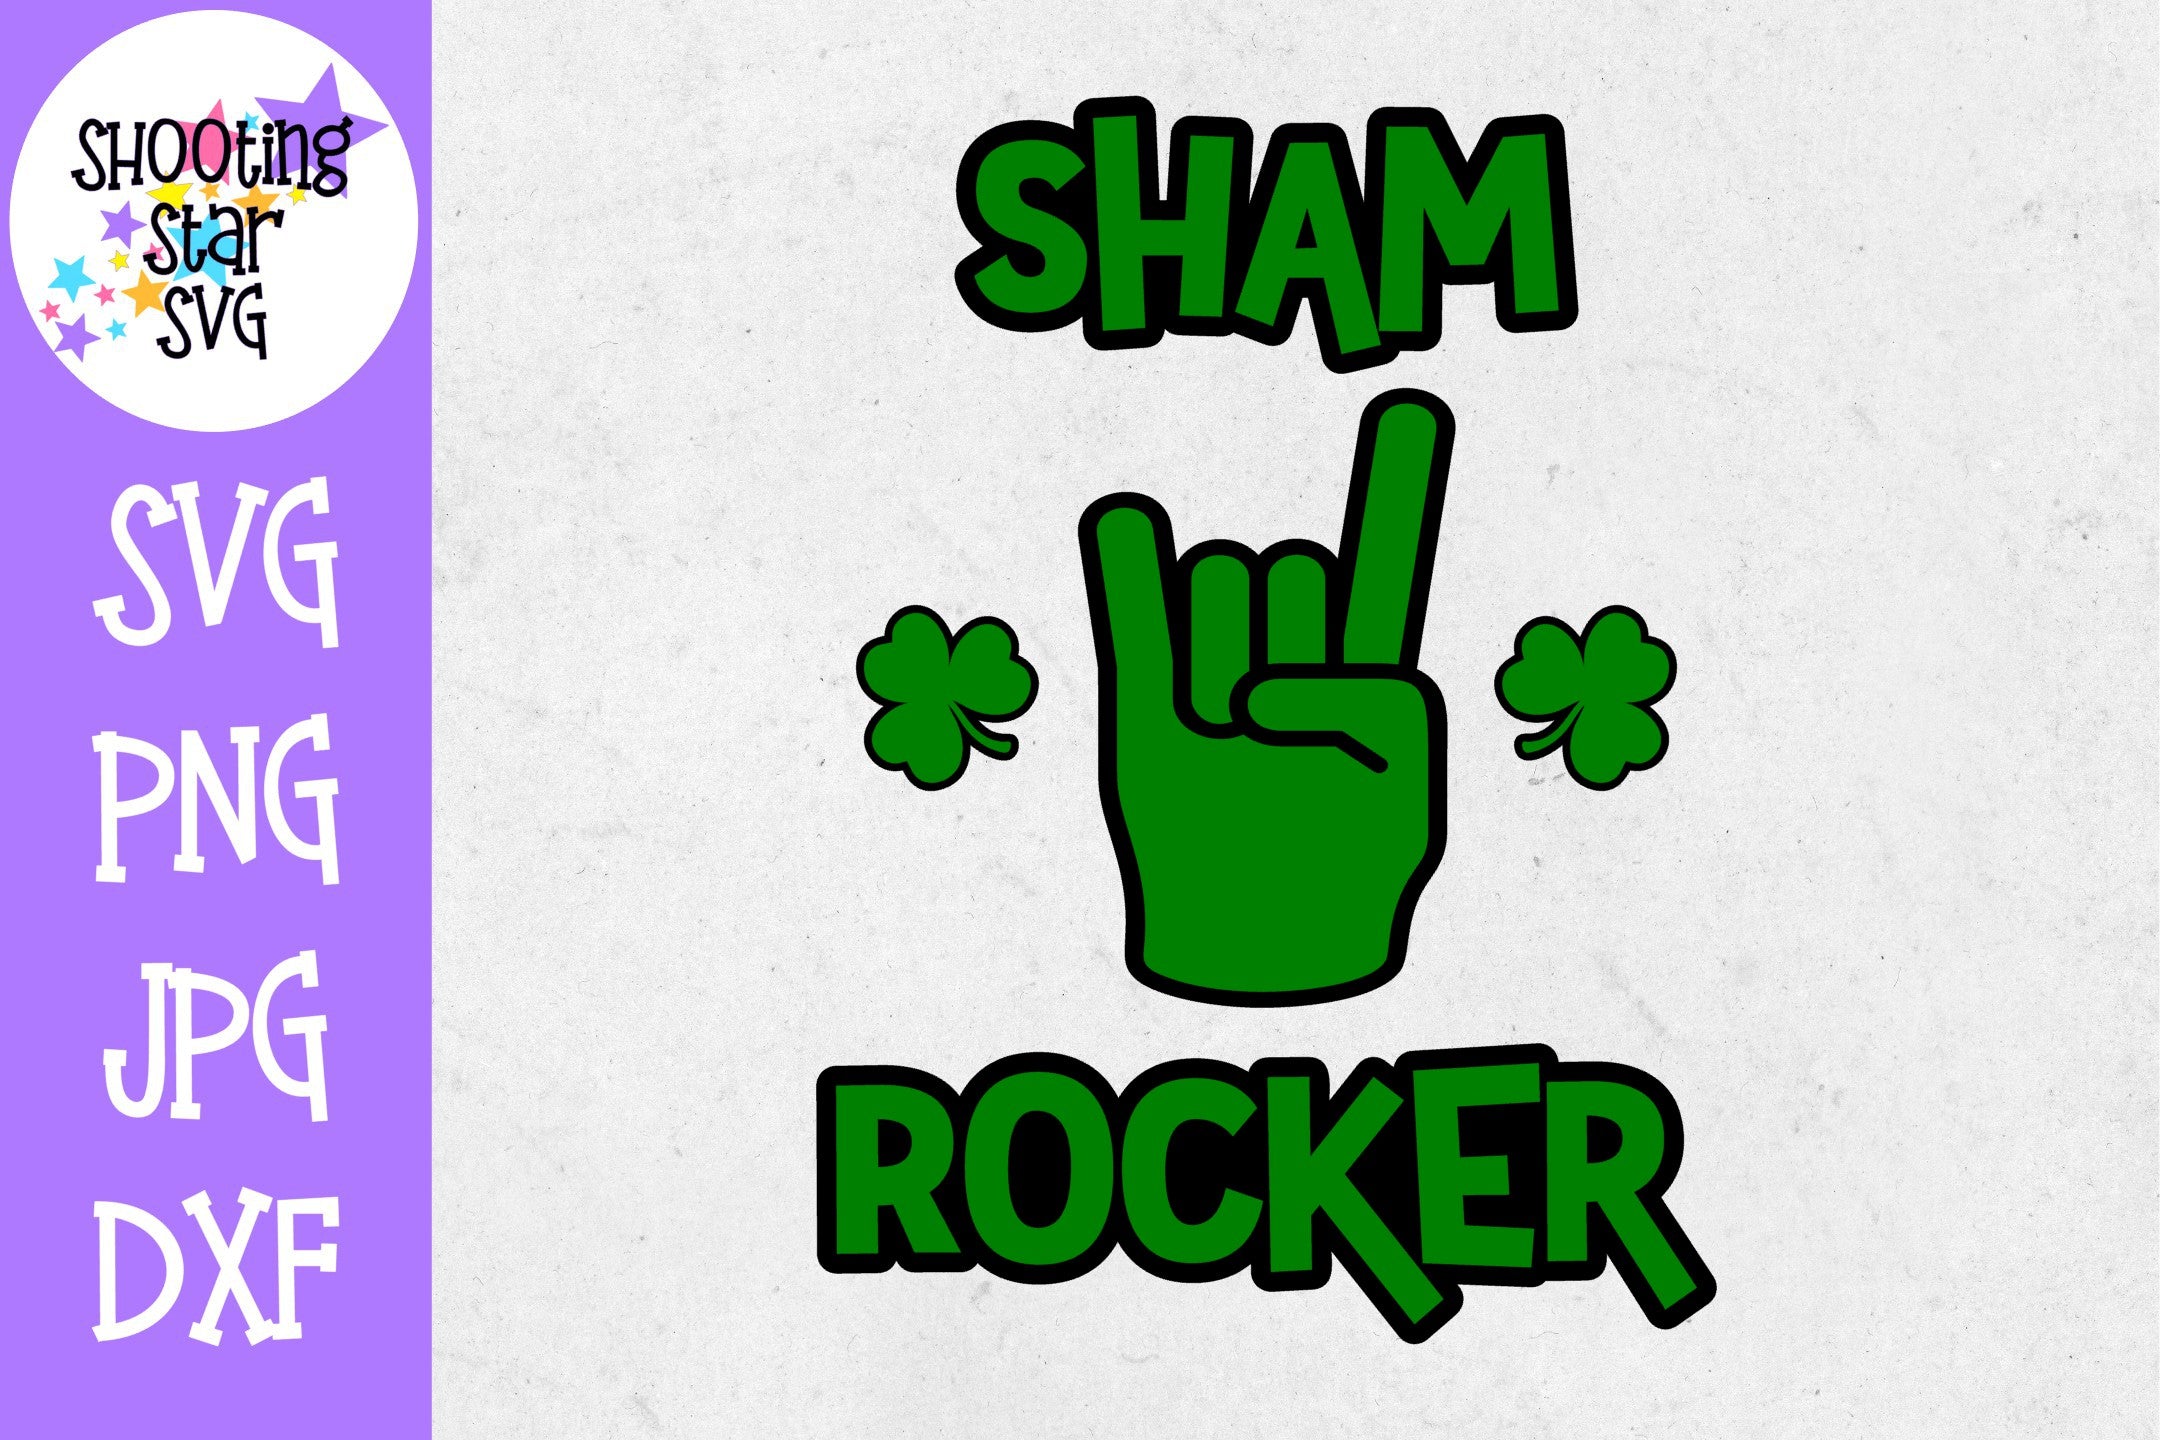 Sham Rocker SVG - St. Patrick's Day SVG